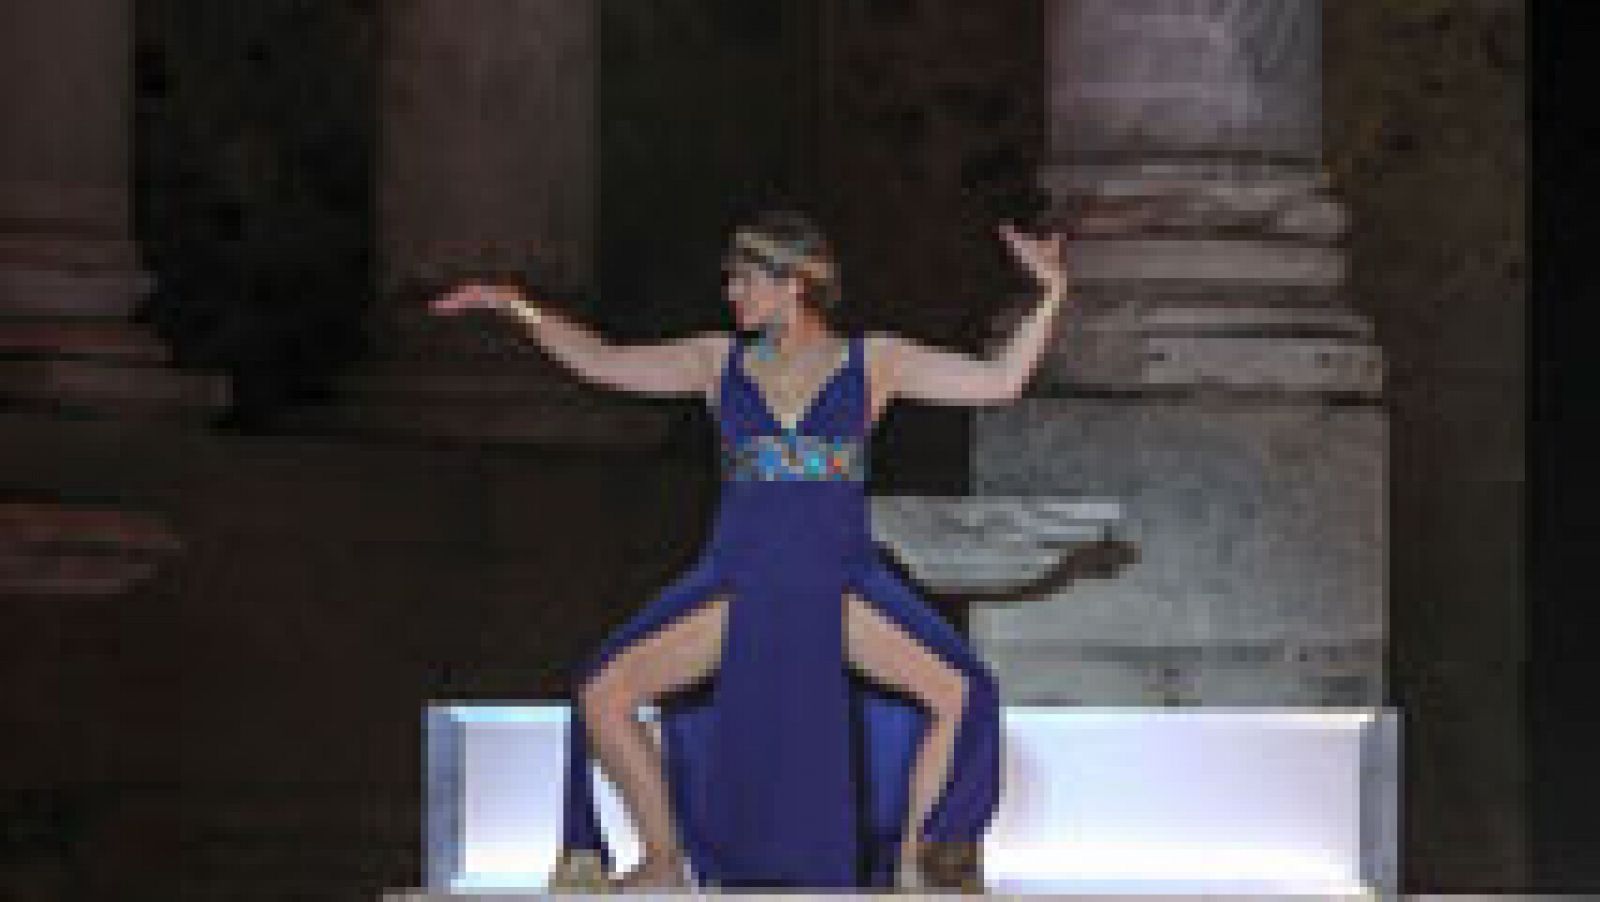 Telediario 1: 'César y Cleopatra' estará hasta el próximo domingo en el escenario del teatro romano de Mérida | RTVE Play